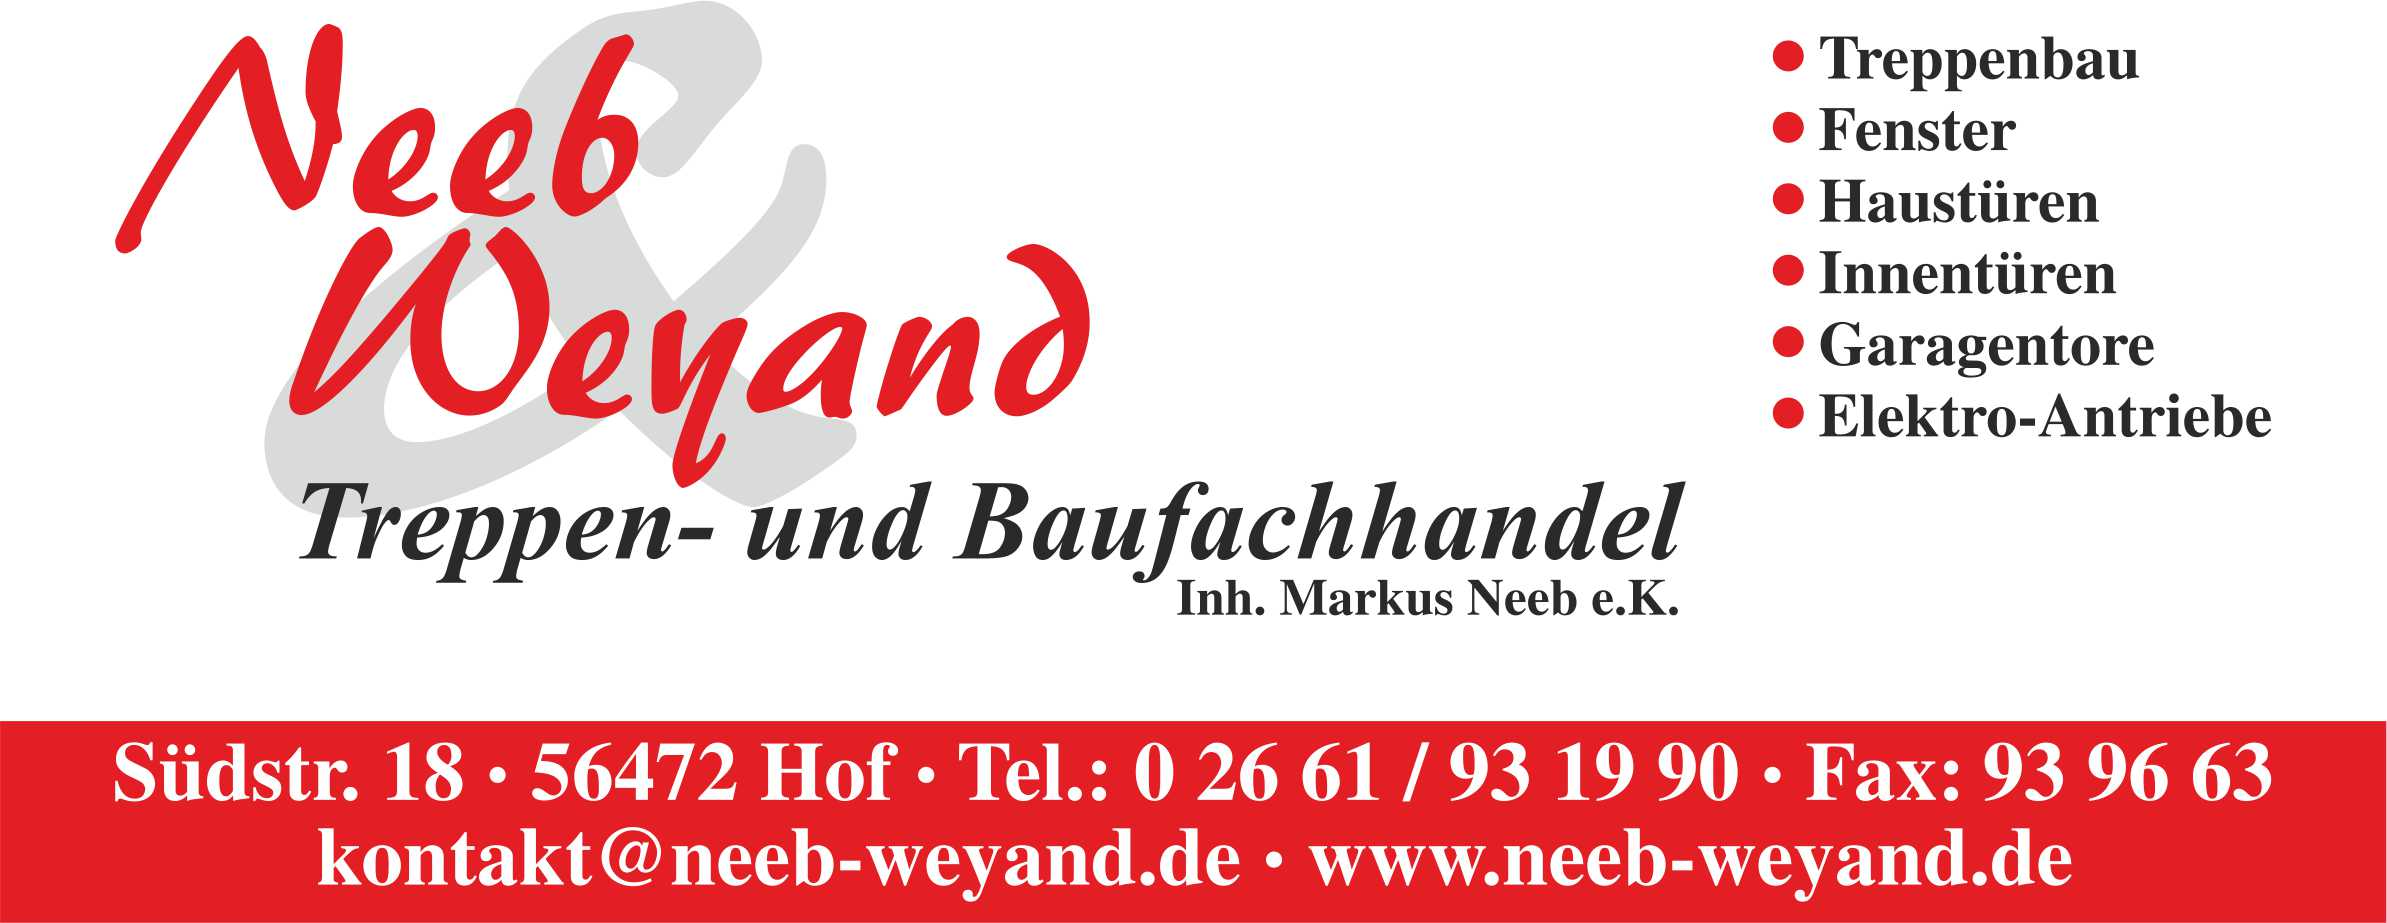 Ihr FeBa-Fachhandelspartner: Ausgabe März 2014 by www.dievirtuellecouch.